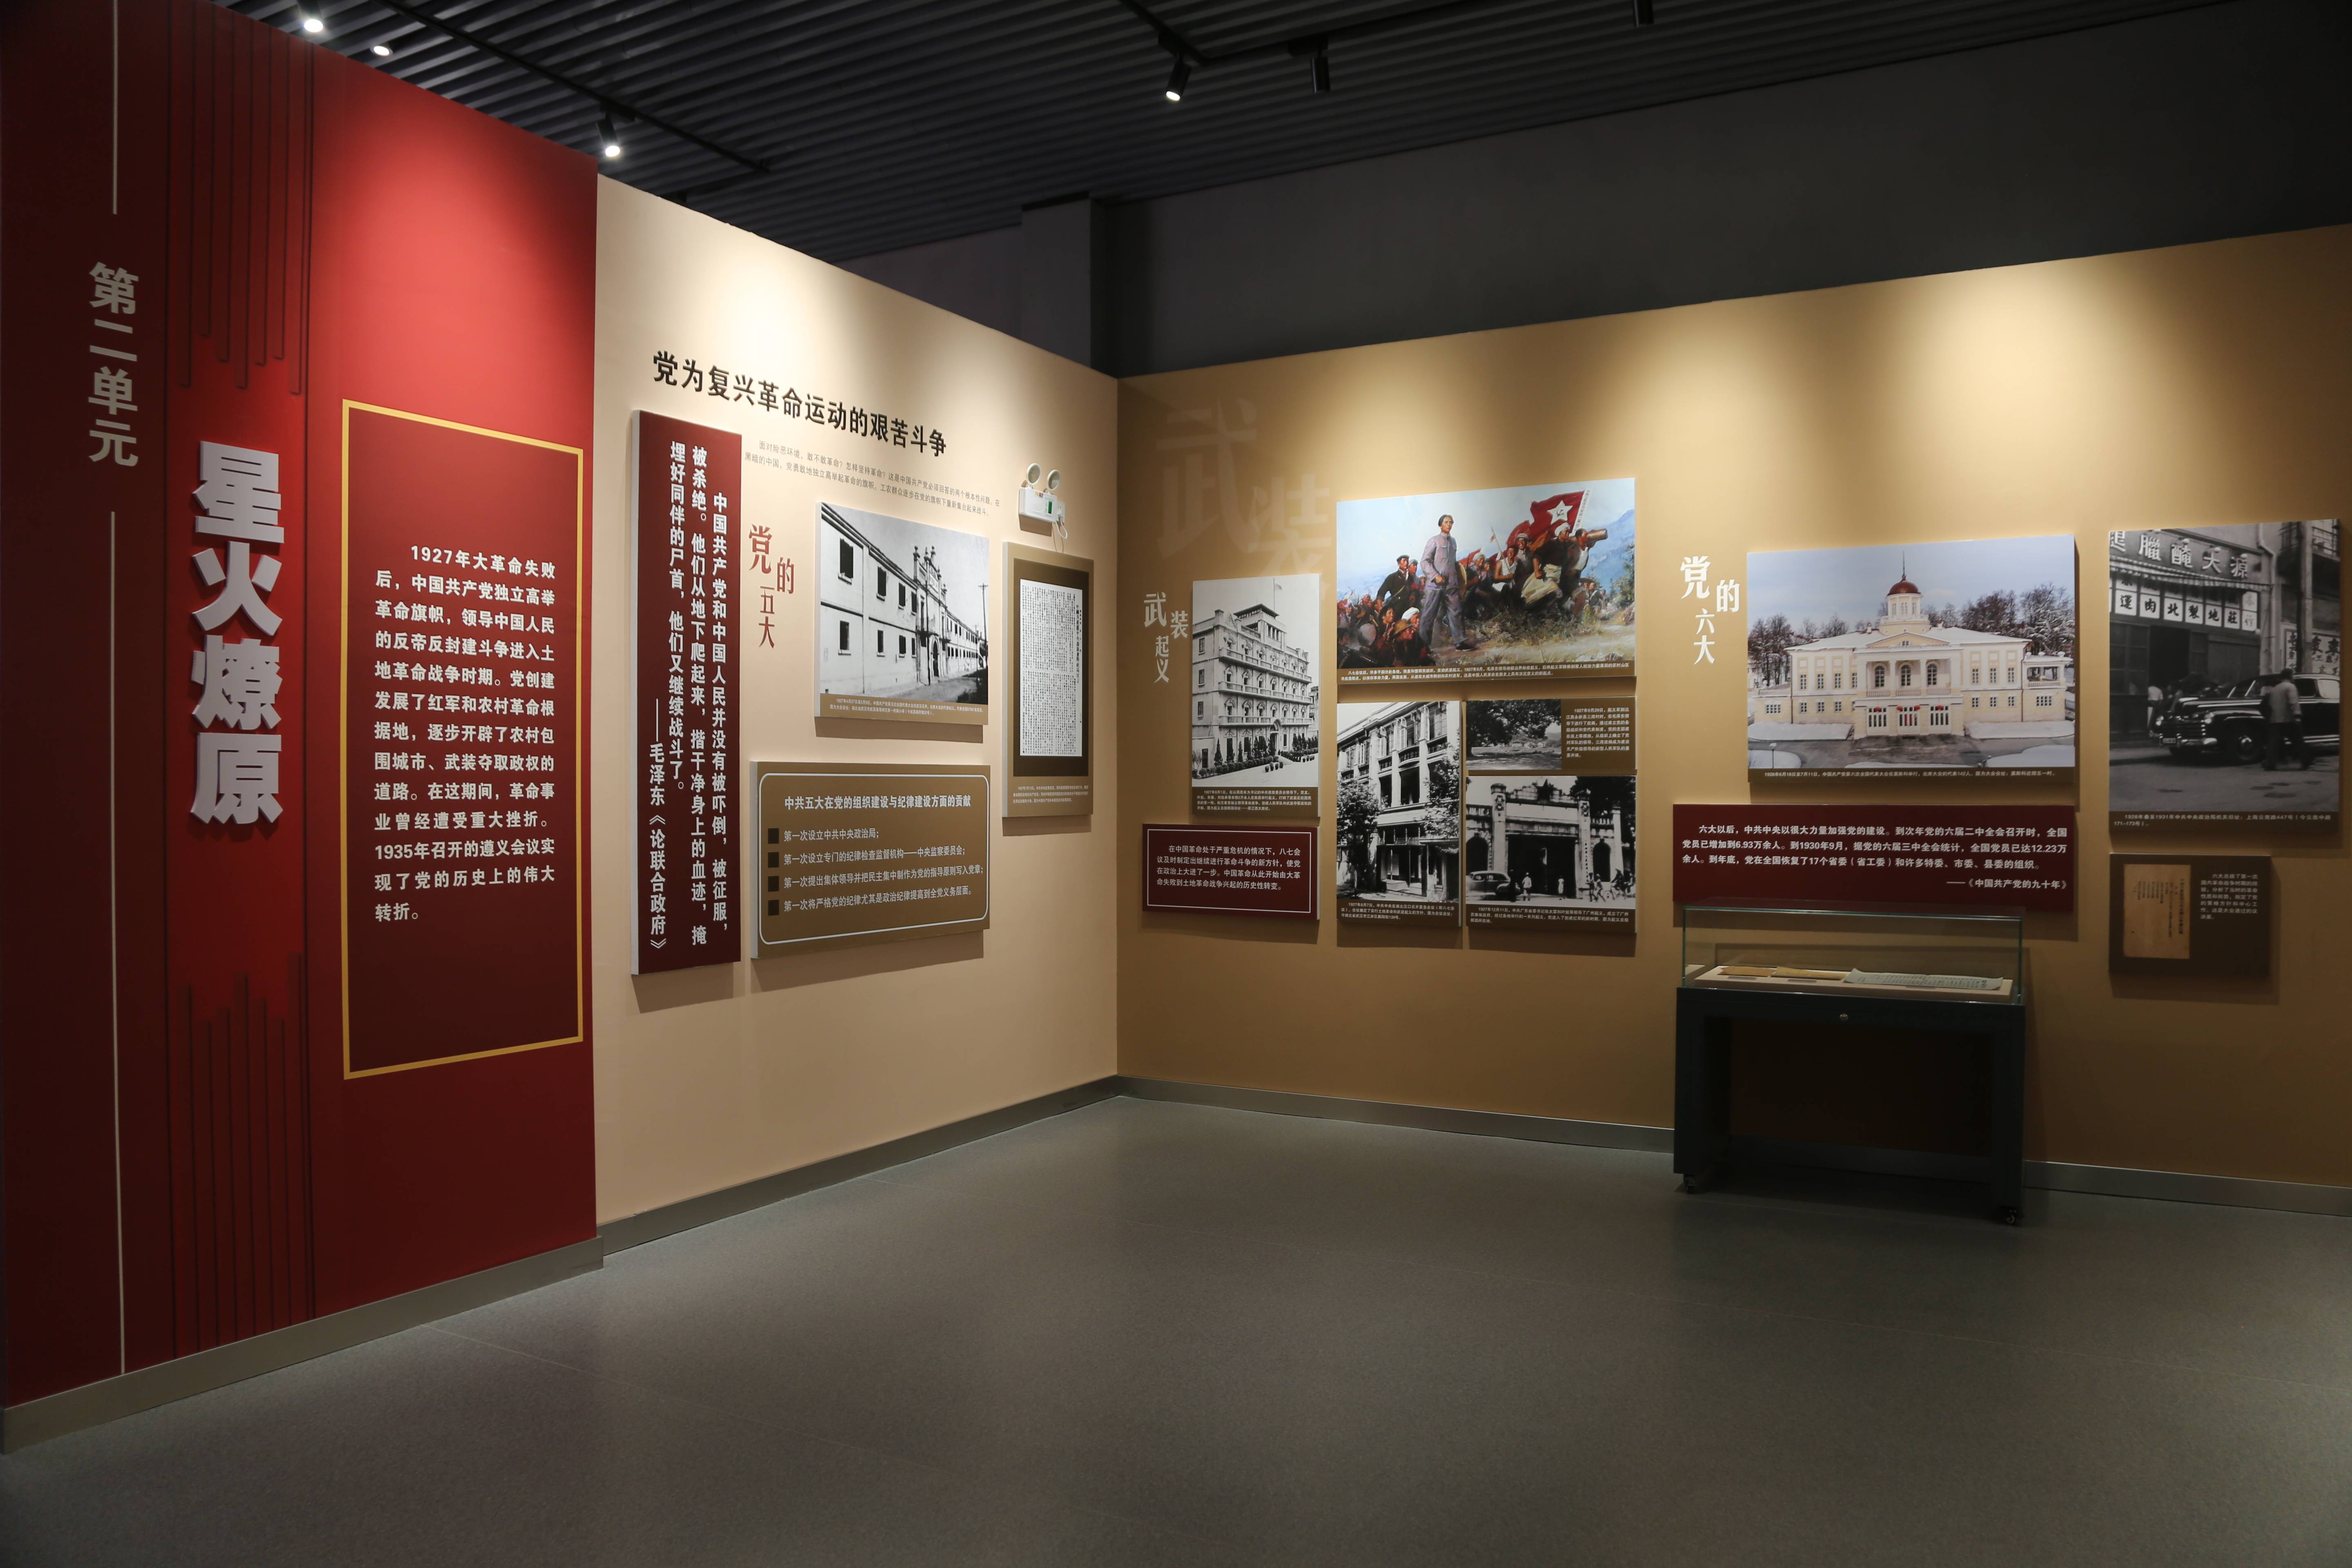 《伟大征程——庆祝中国共产党成立100周年特展》 在西柏坡纪念馆开展